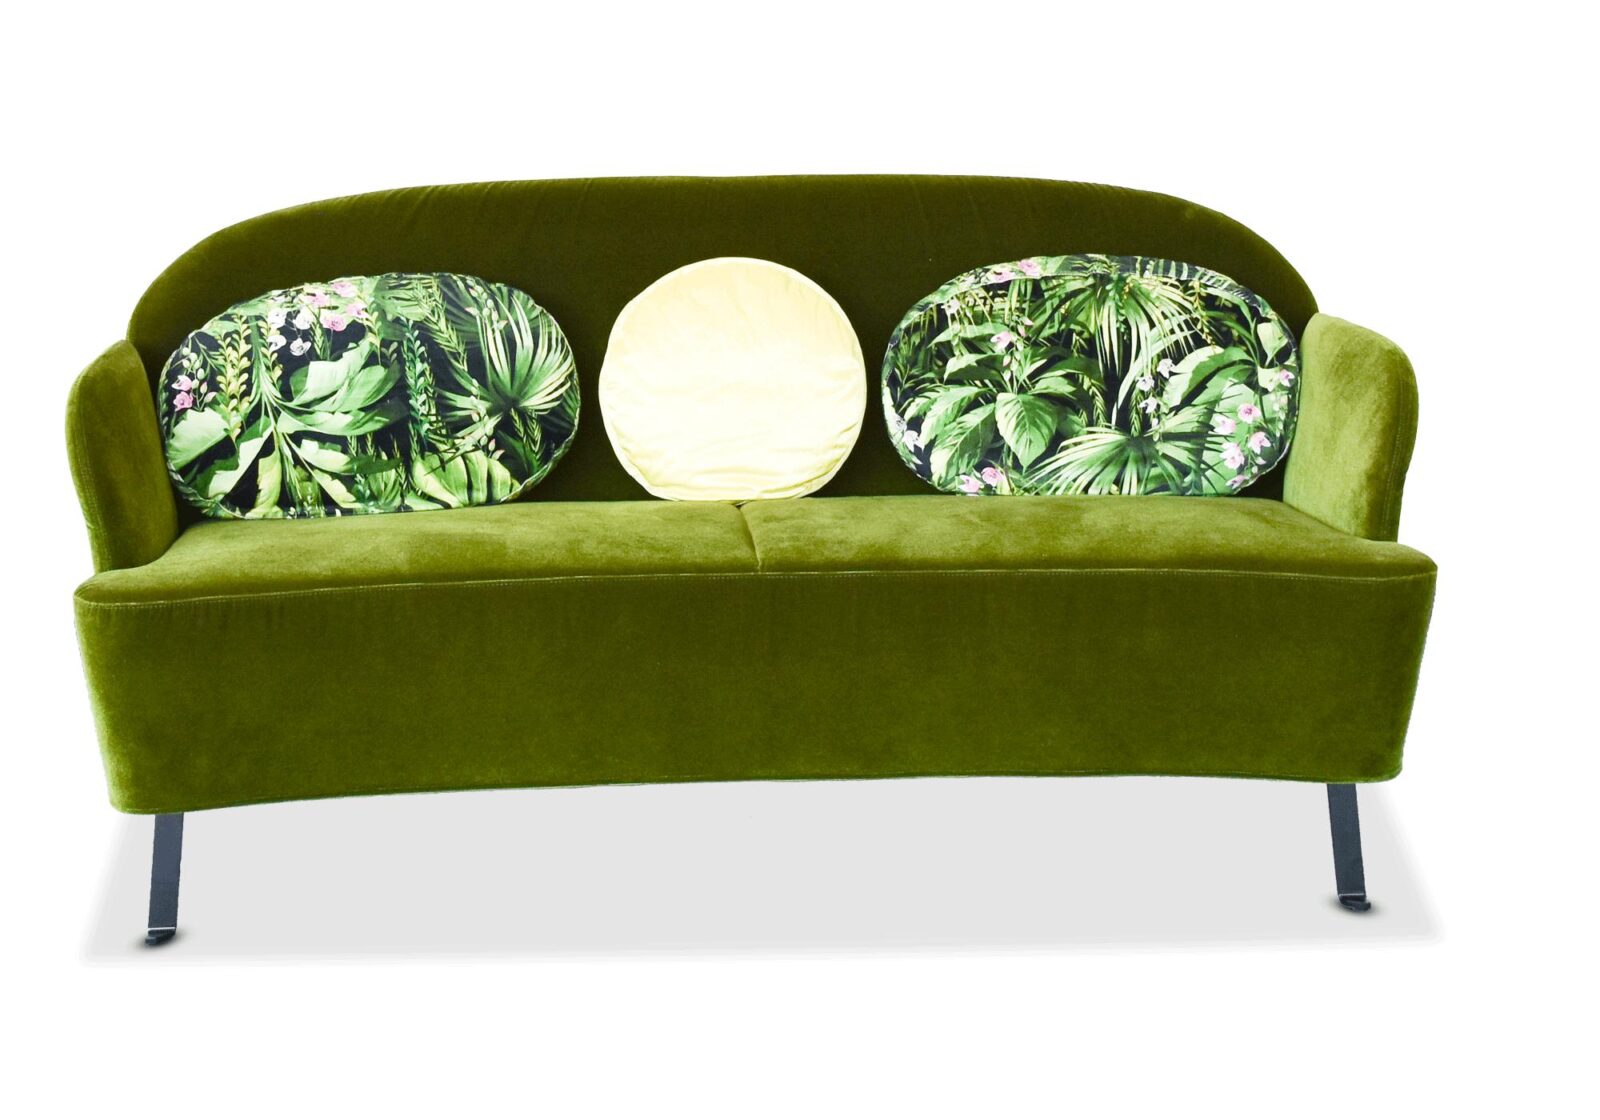 3er Sofa Floret Brühl mit bedruckten Kissen. Bezug: Stoff. Farbe: Grün. Erhältlich bei Möbel Gallati.